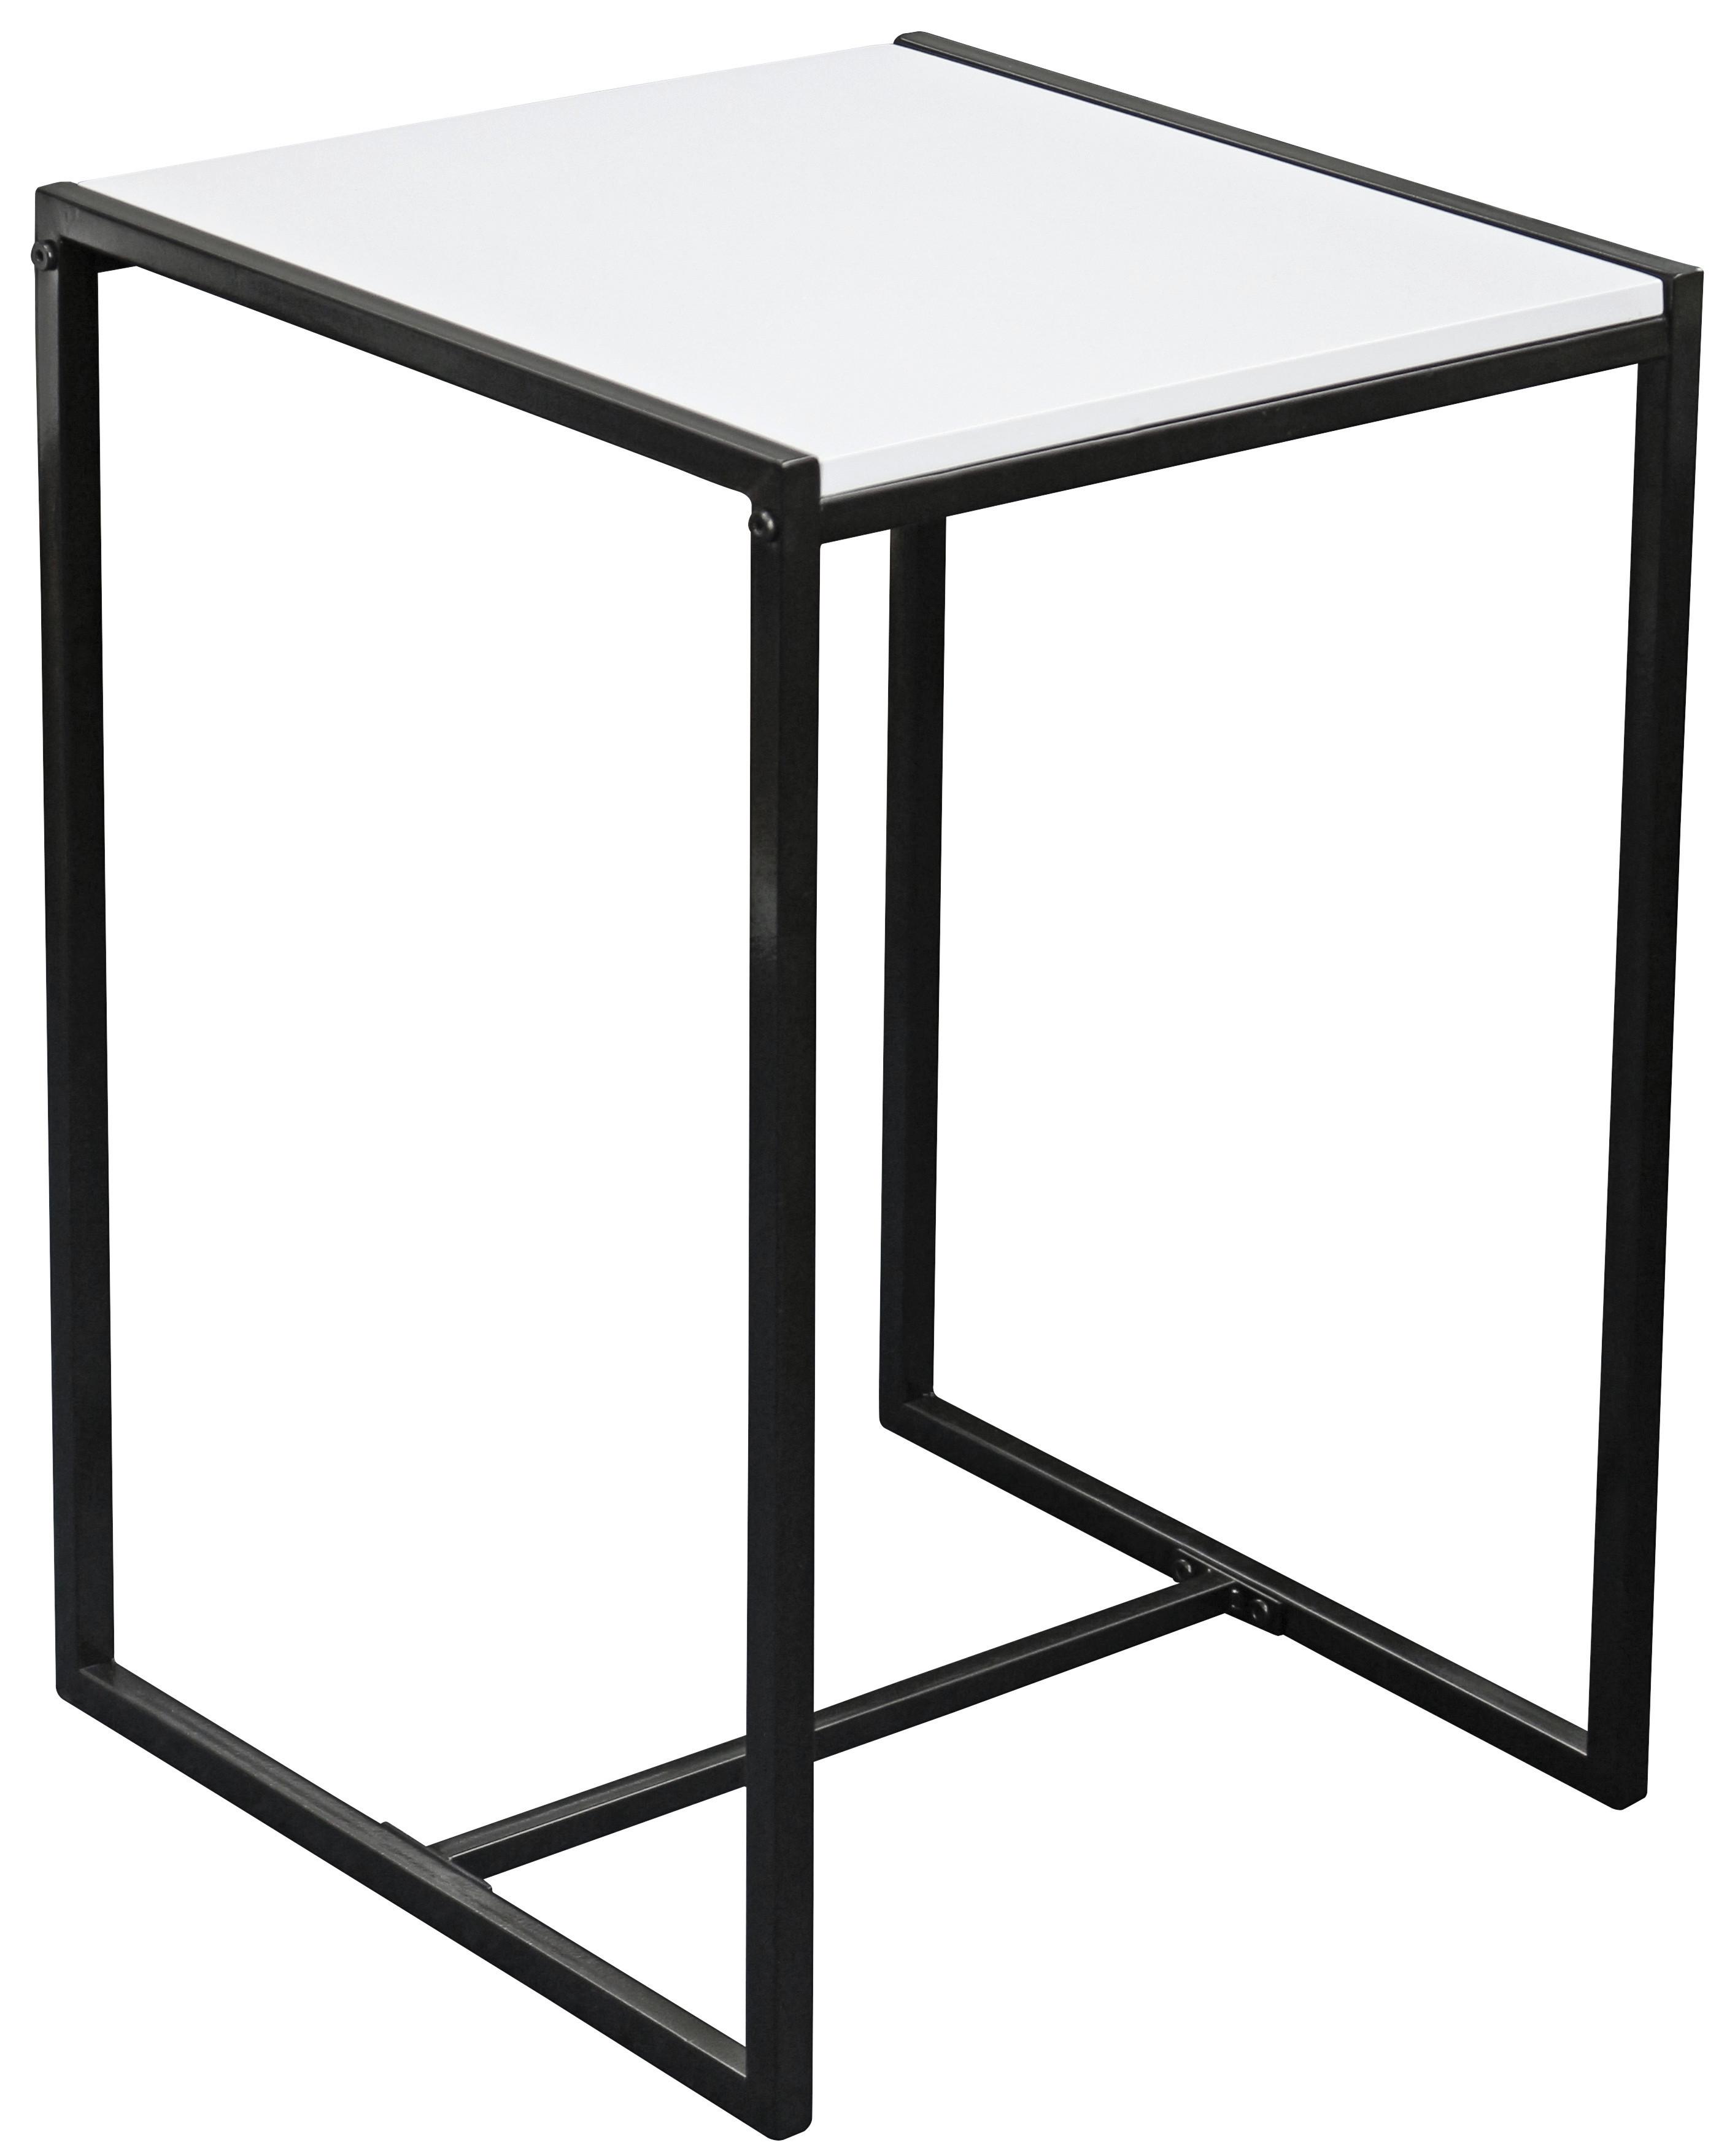 STOLIK BOCZNY BALI - czarny/biały, Modern, materiał drewnopochodny/metal (39/58/39cm)